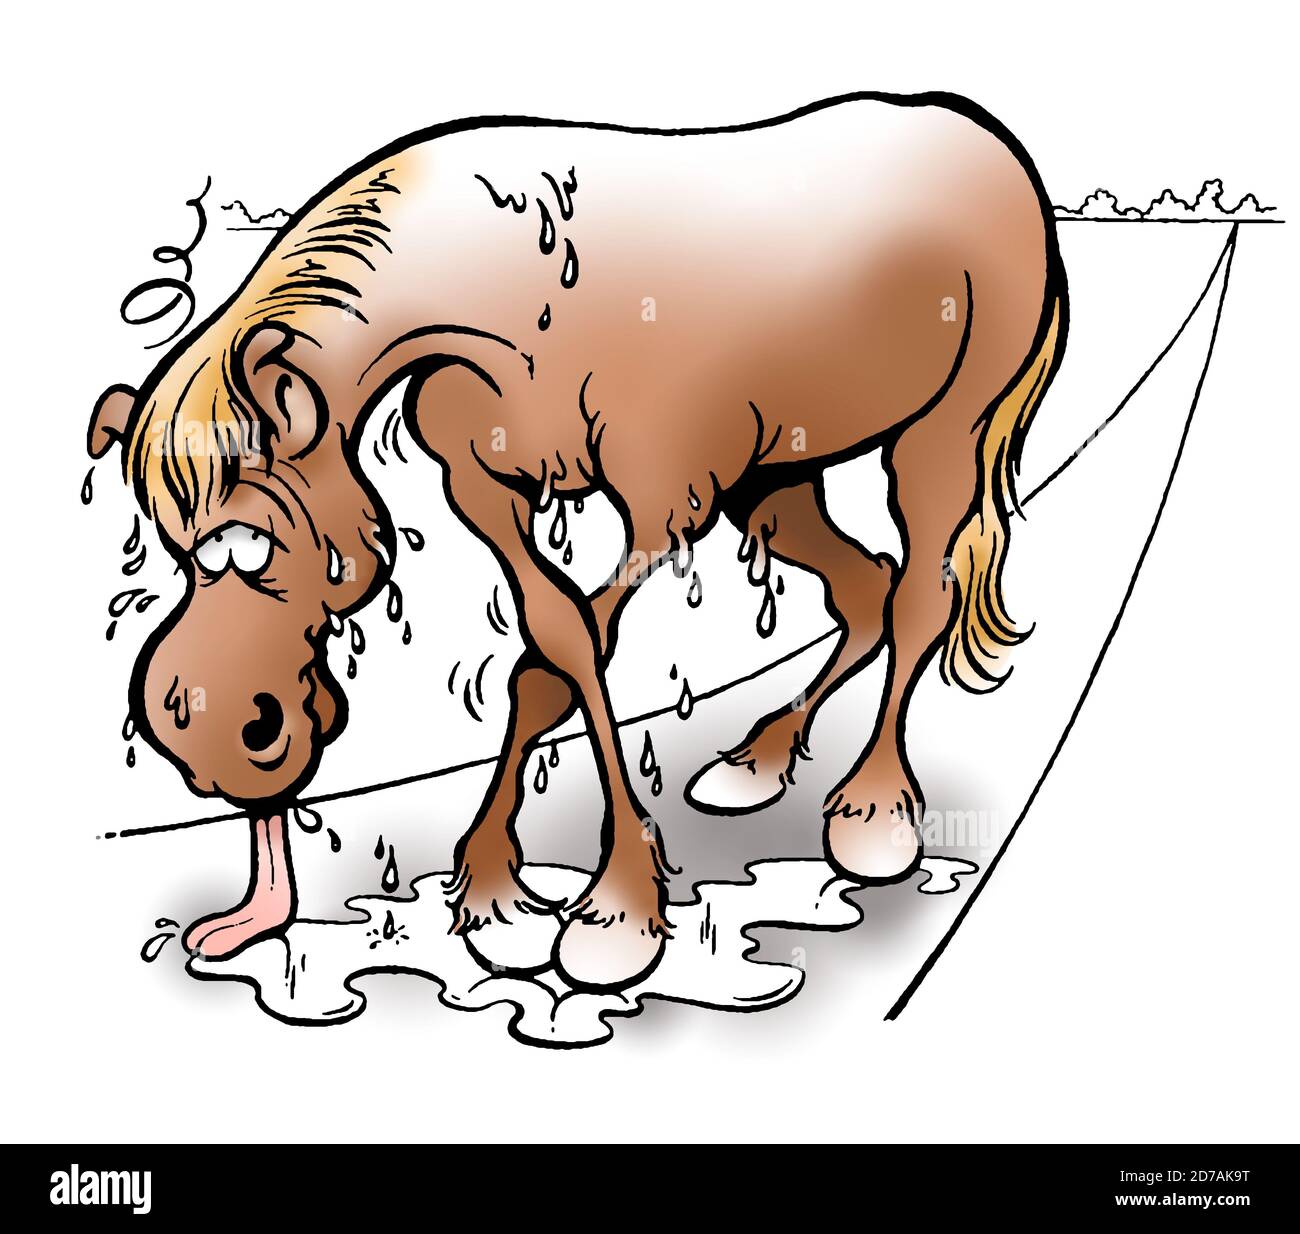 Cavallo marrone sudato ed esausto con lingua a terra quasi affonda attraverso le gambe. Illustrazione Foto Stock